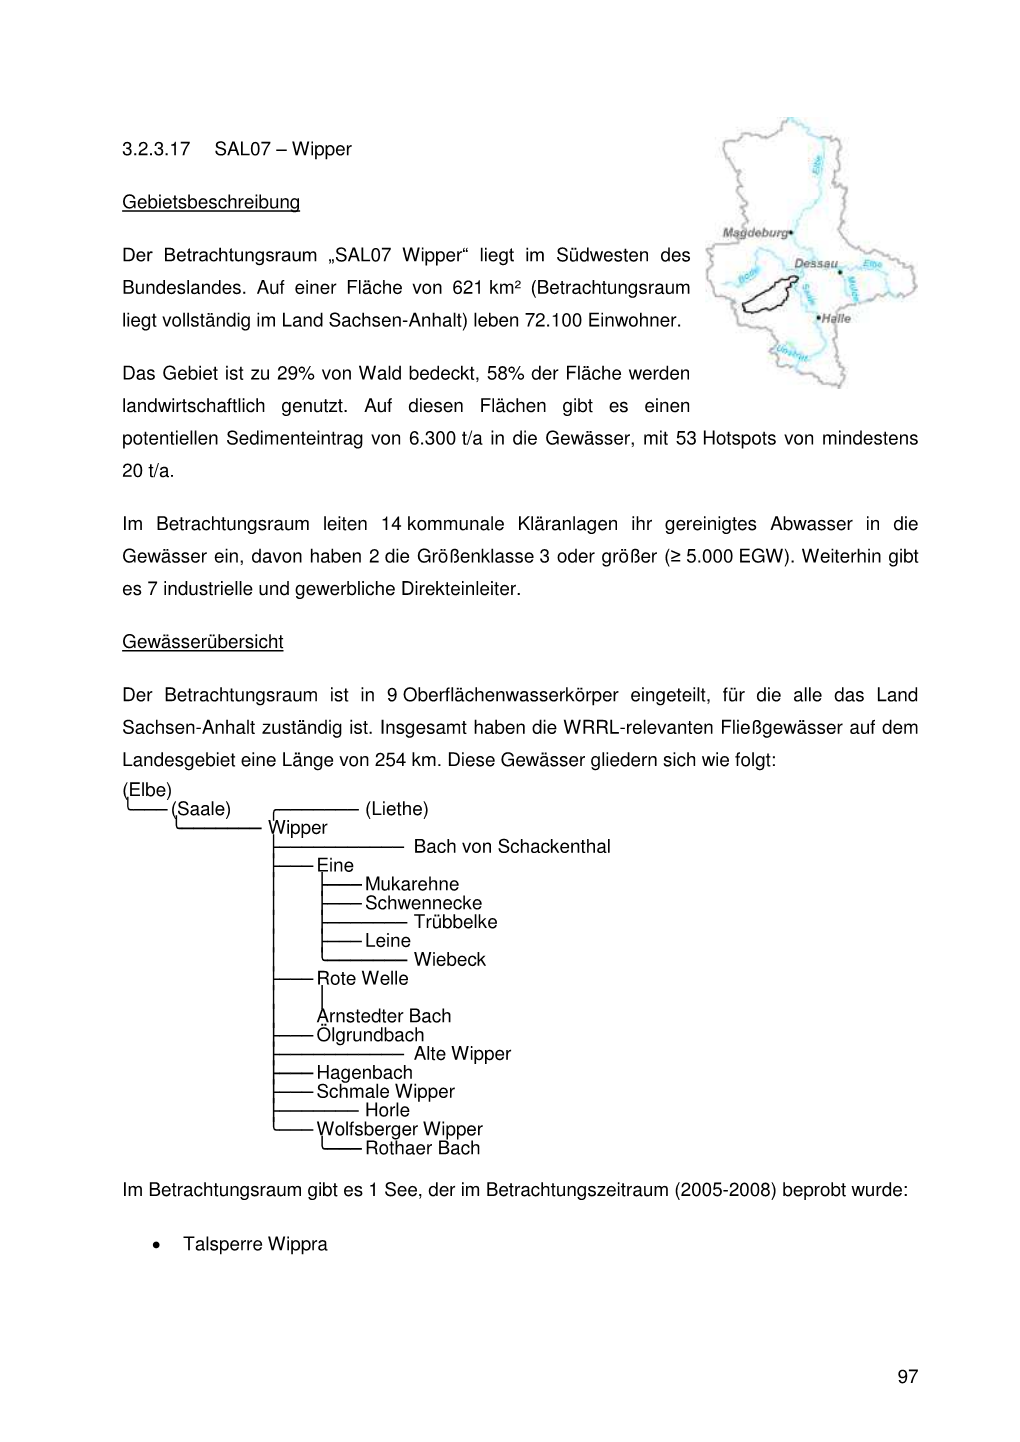 SAL07 Wipper“ Liegt Im Südwesten Des Bundeslandes